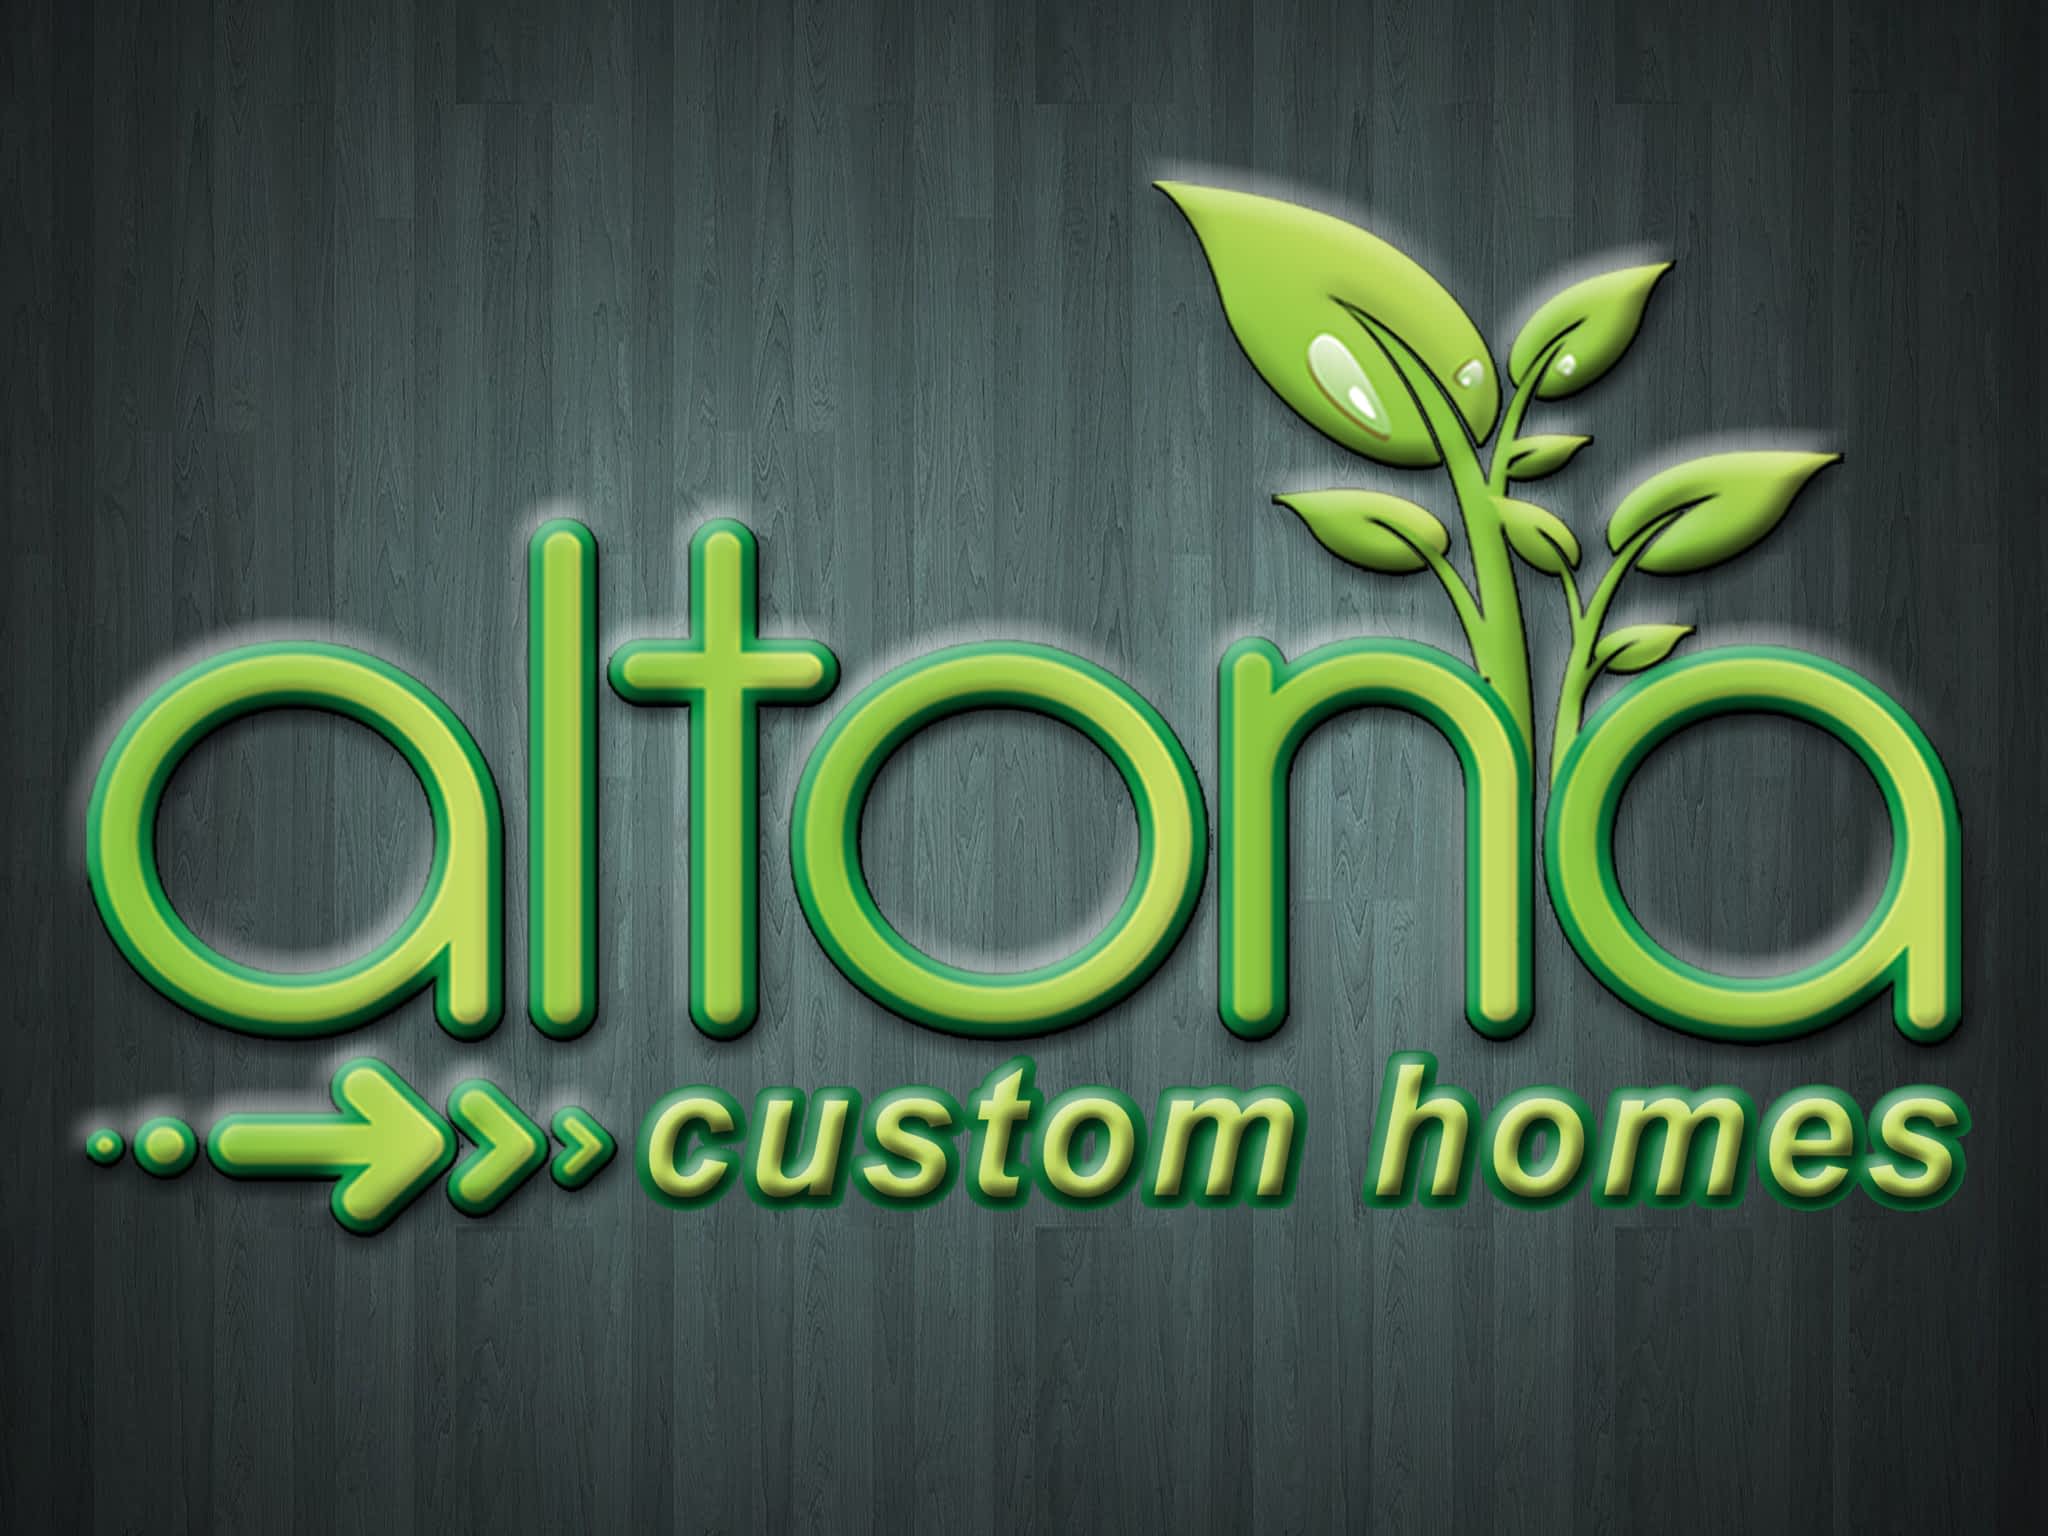 photo Altona Custom Homes